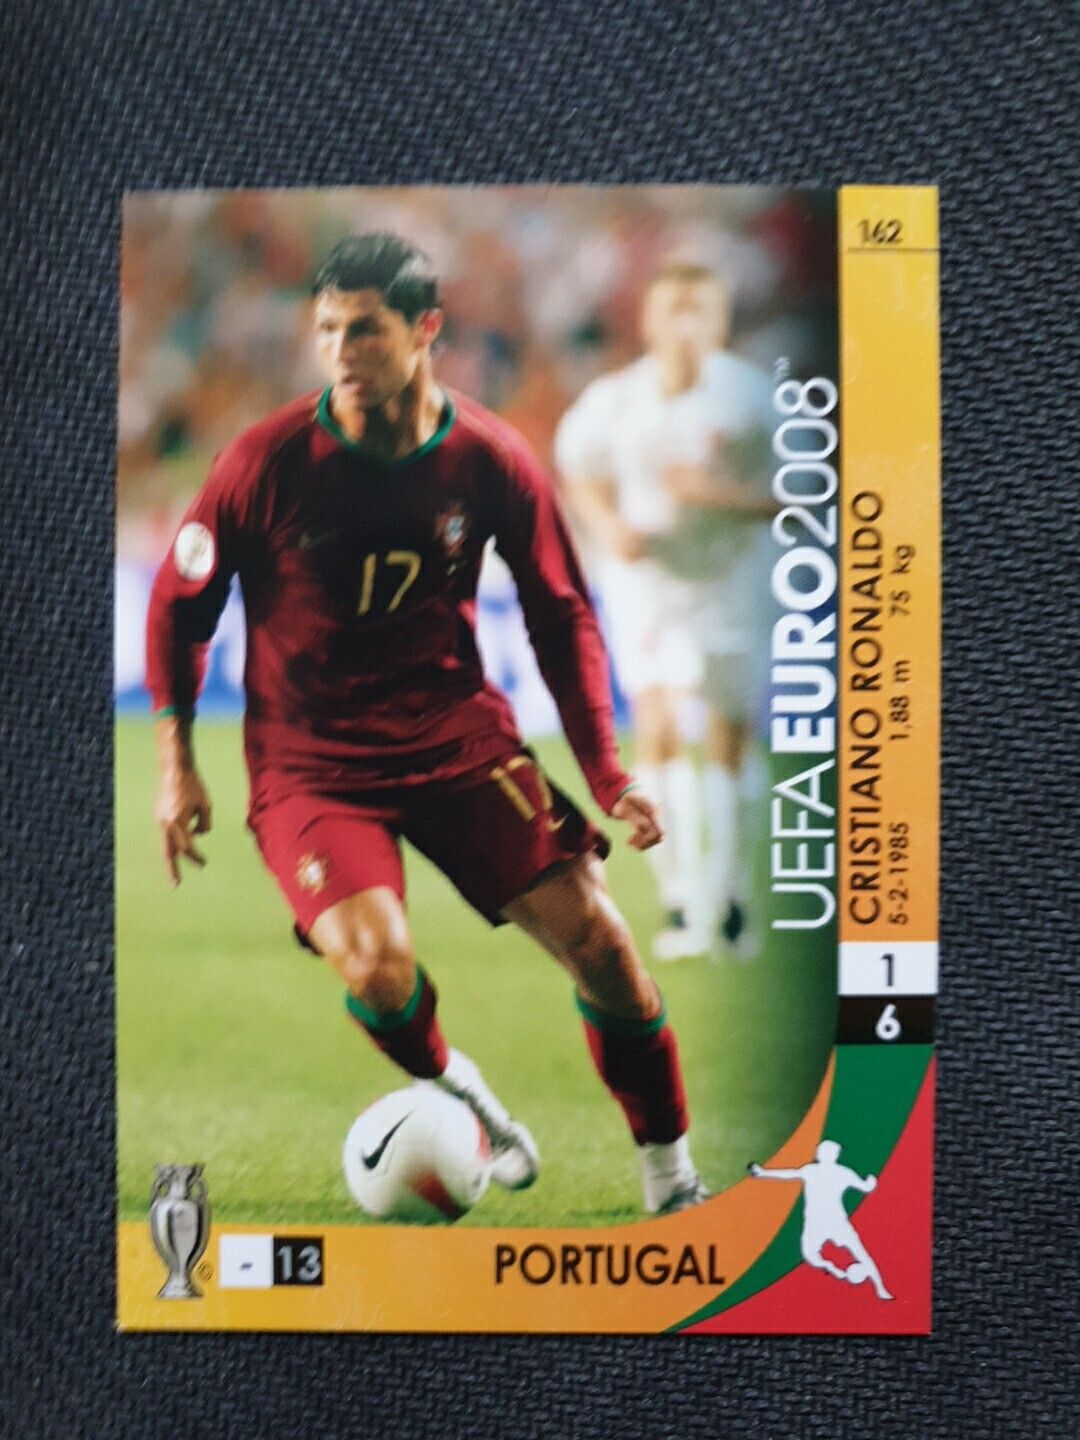 2008 UEFA EURO PANINI - Cristiano Ronaldo Trading Cards #162